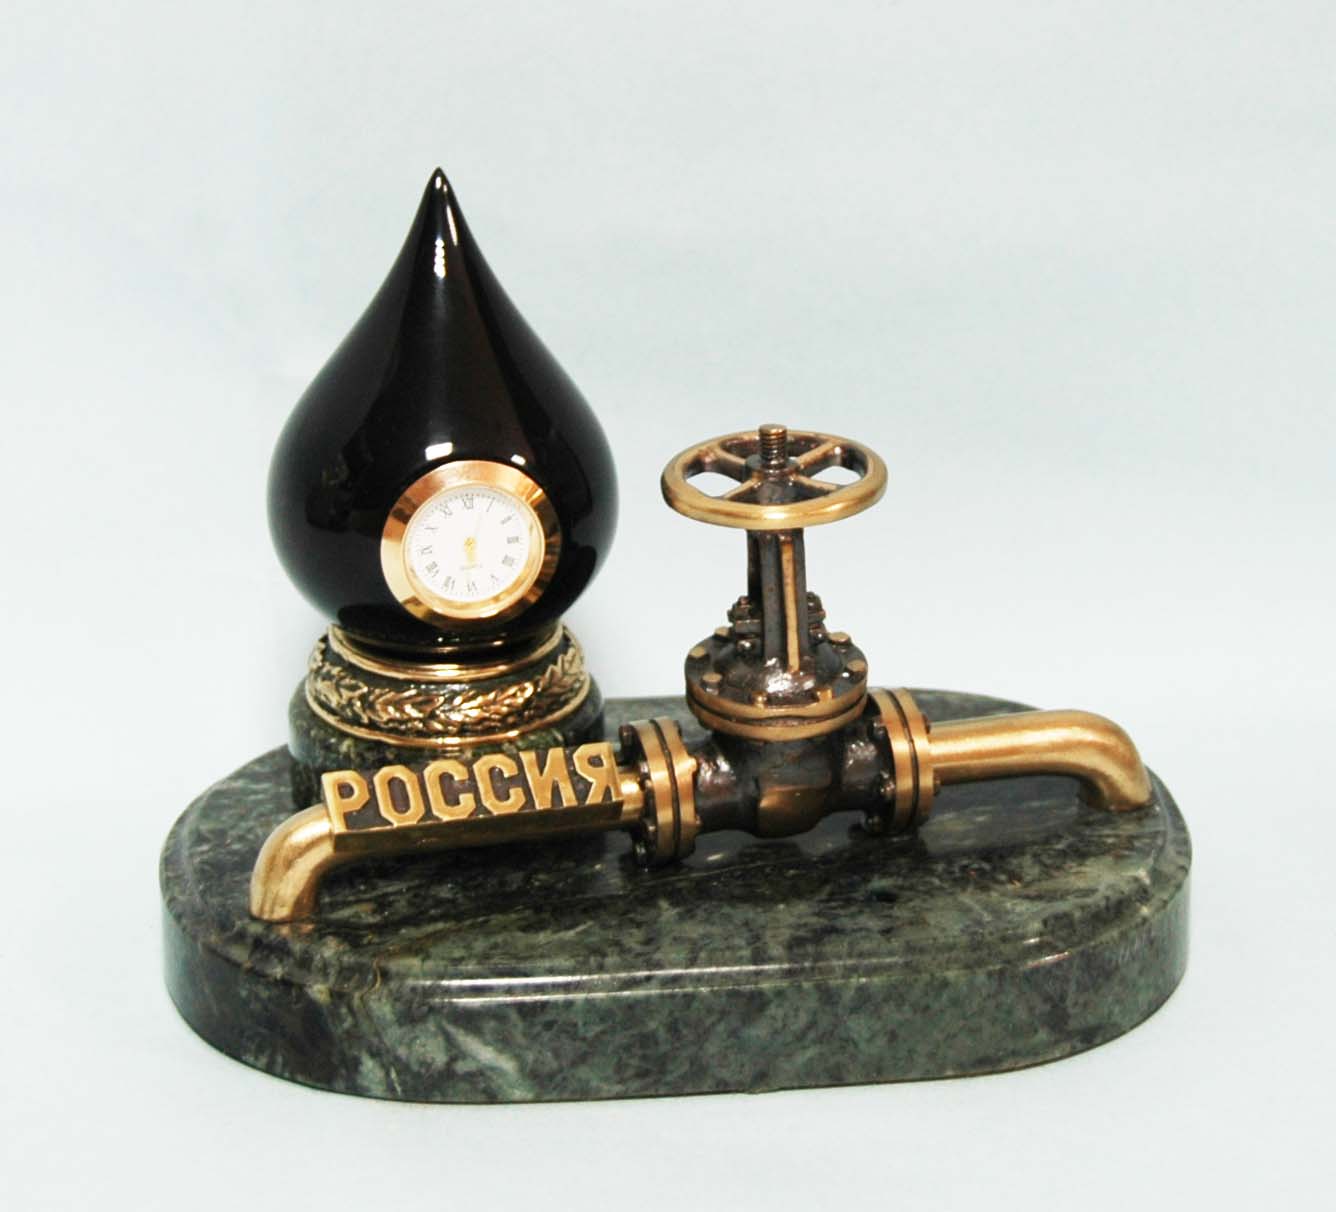 Сувенир-часы "Российская нефтяная промышленность"